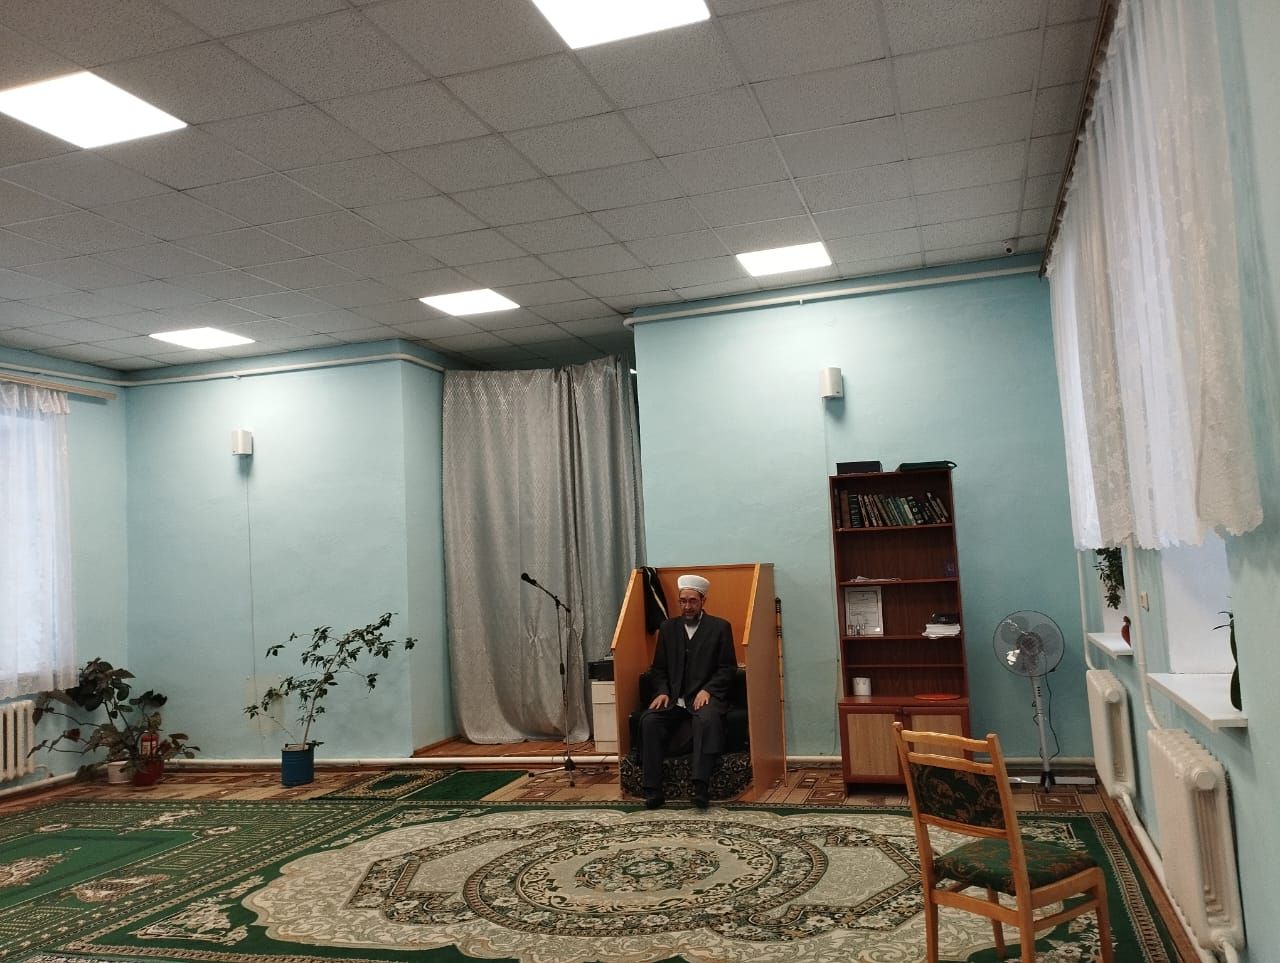 На третий день Священного месяца Рамадан в Ютазинской мечети «Фатх» прошел ифтар